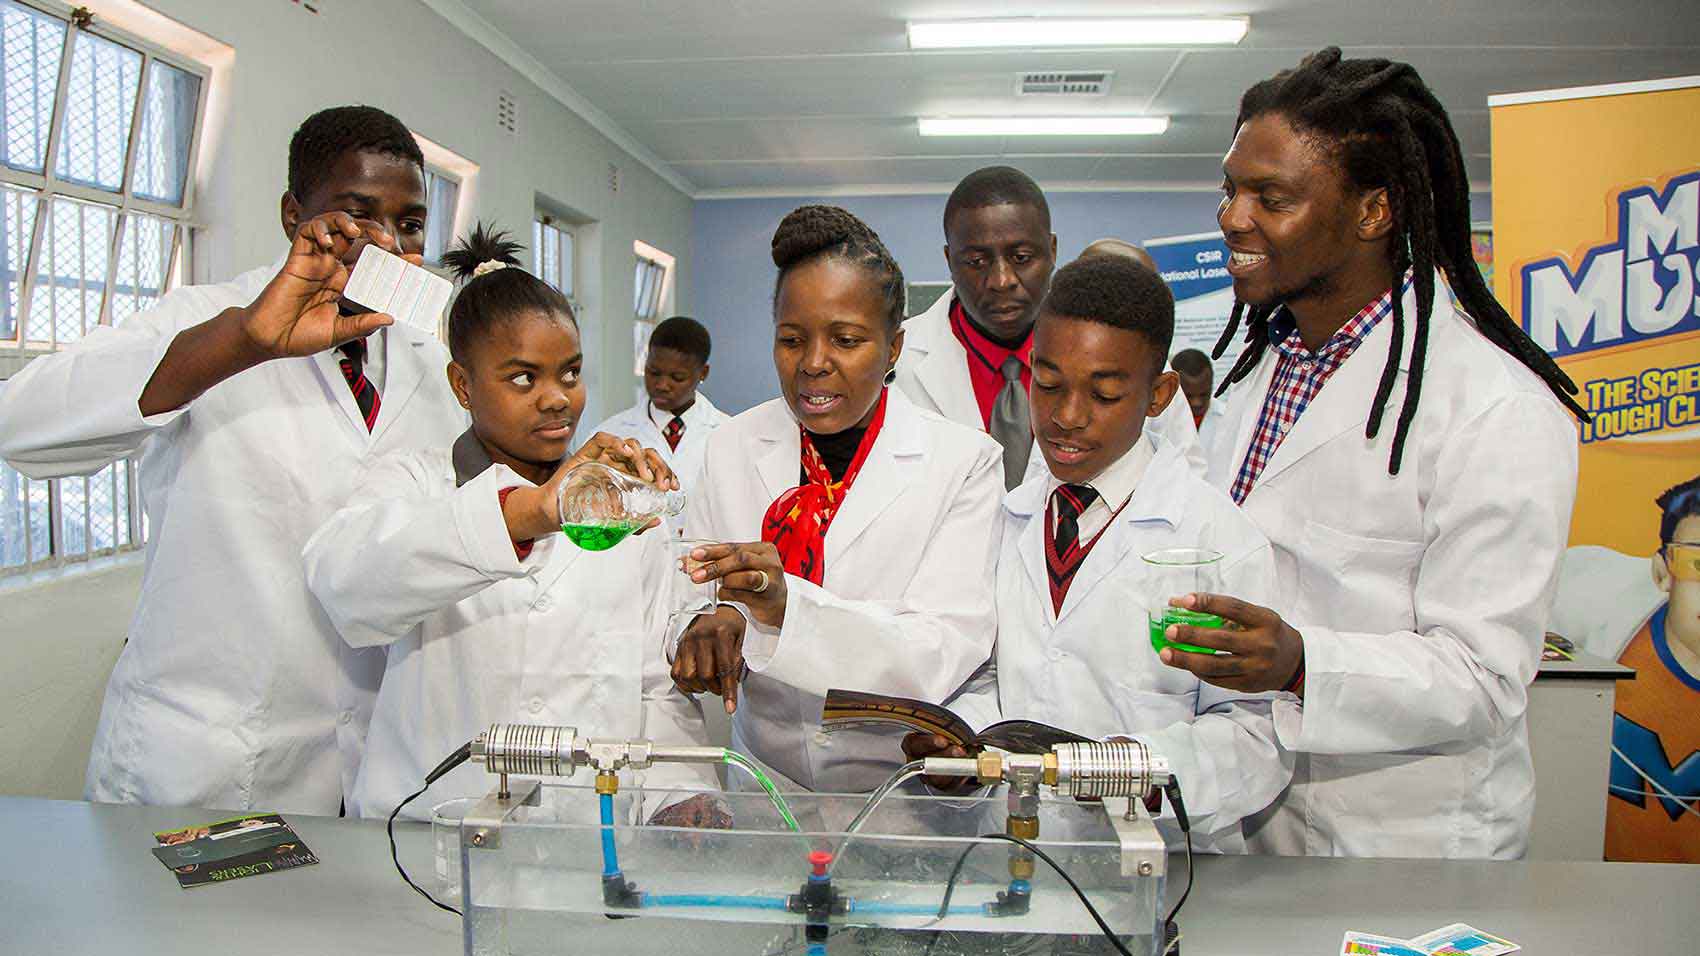 庄臣的公司慈善事业计划为学生提供科学实验室和设备。